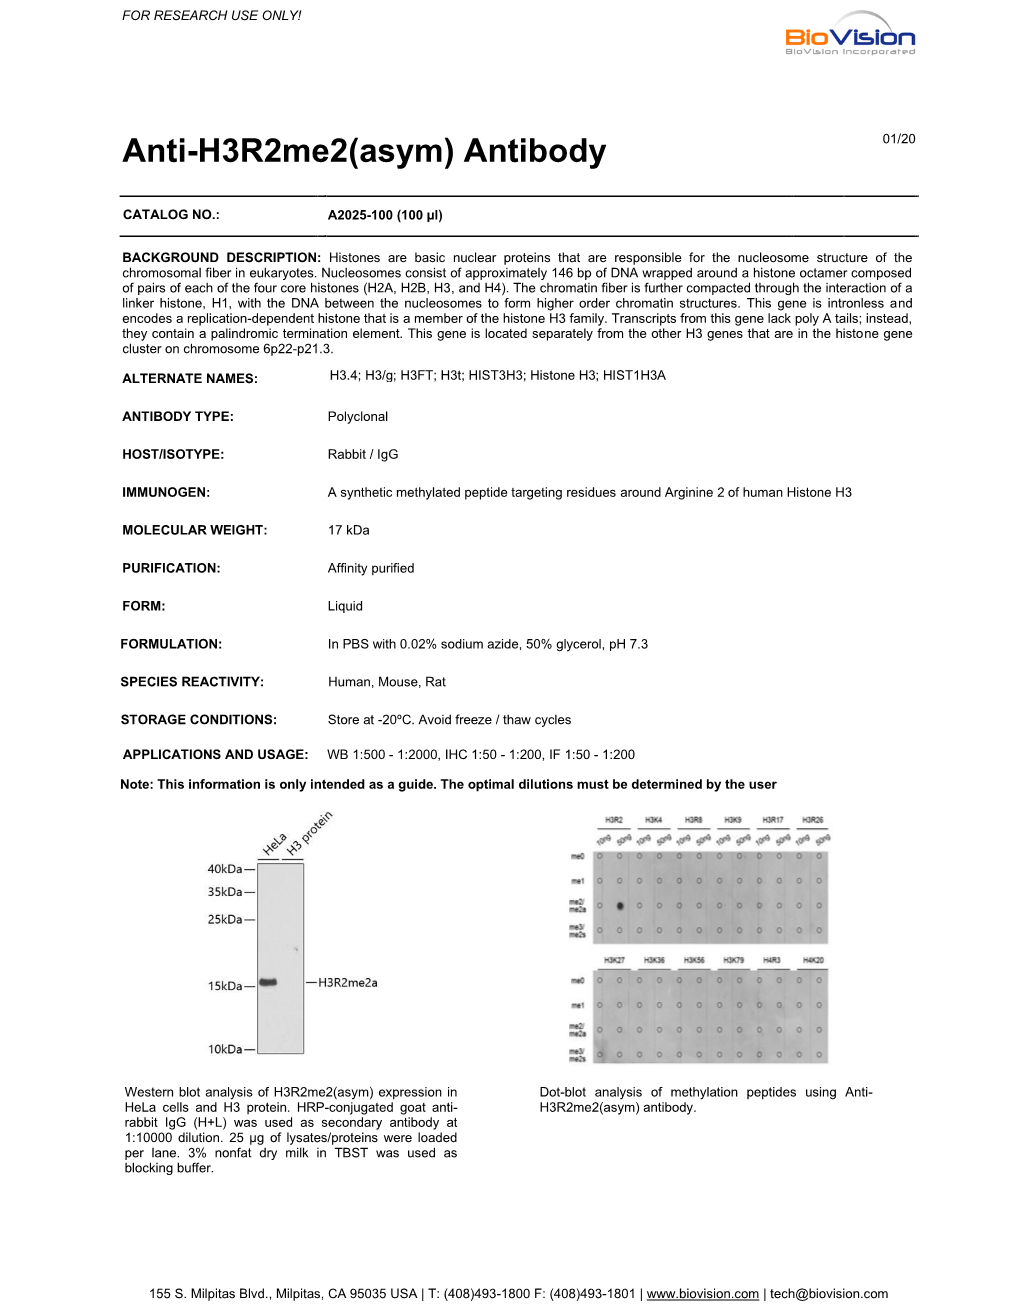 Anti-H3r2me2(Asym) Antibody